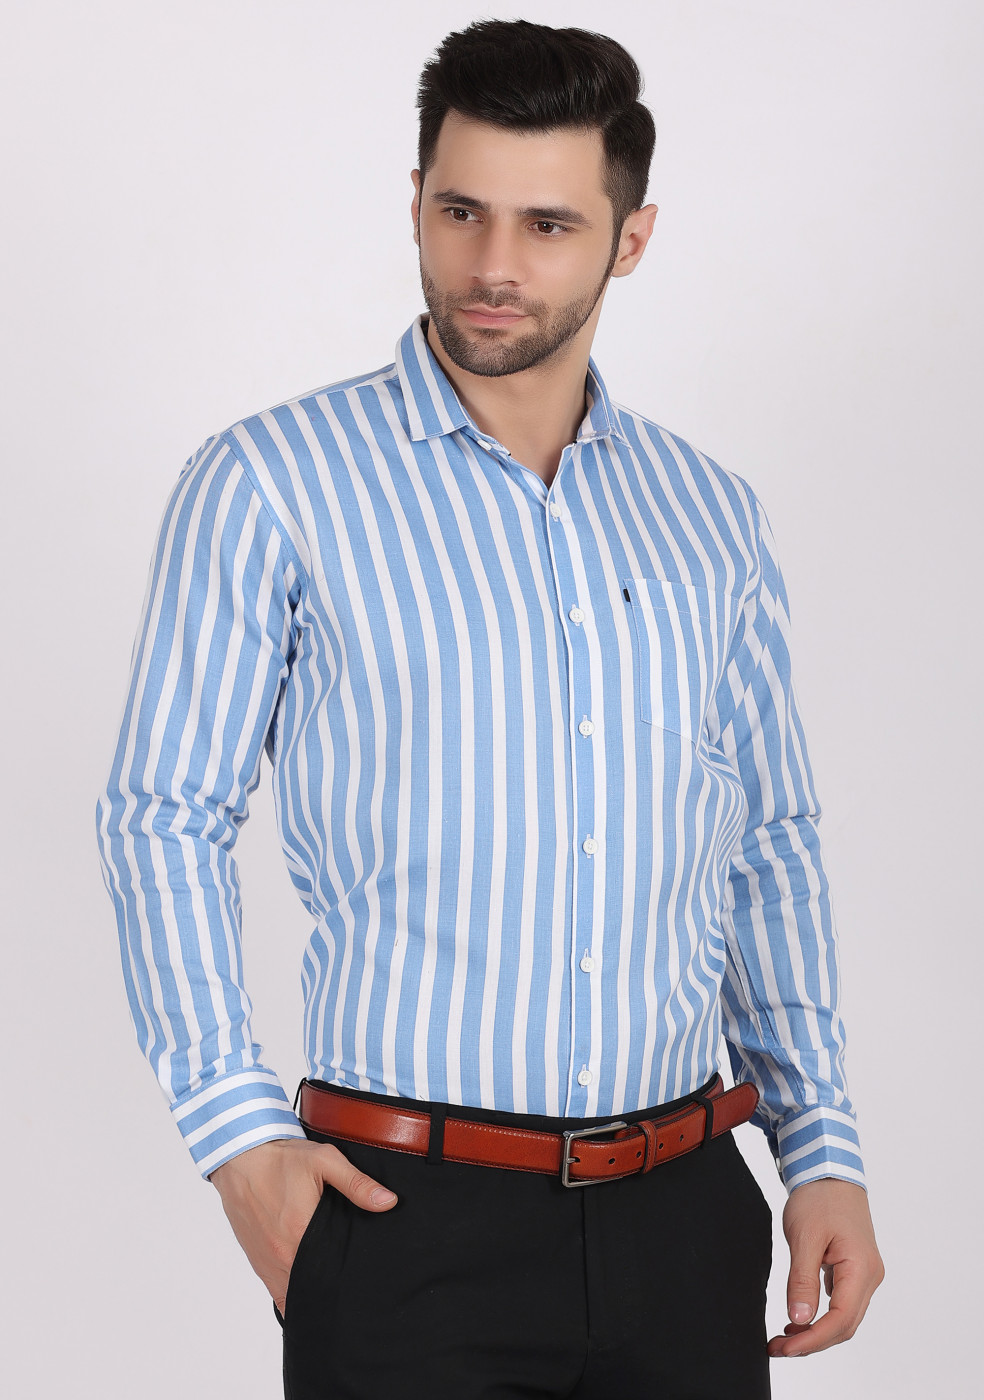 ASHTOM Blue White Lining Shirt For Men